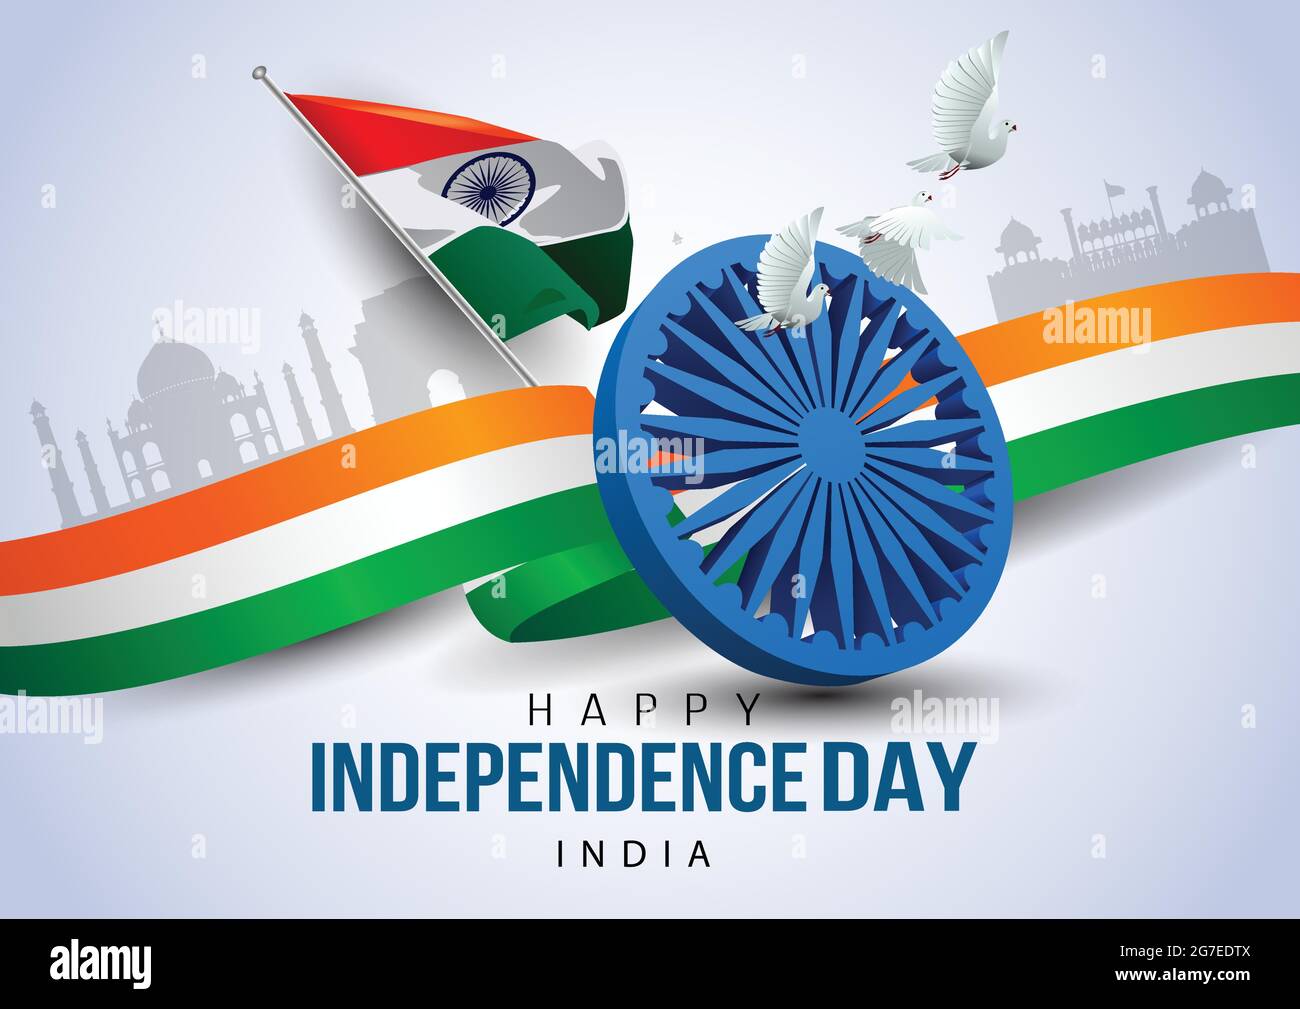 Hãy để những Vector hình nền kỷ niệm ngày Độc lập Ấn Độ ngày 15 tháng 8 làm nền tảng cho những cảm xúc về quá khứ và hiện tại. Hãy chúc mừng cùng với chúng tôi và hòa mình vào không khí lễ hội!